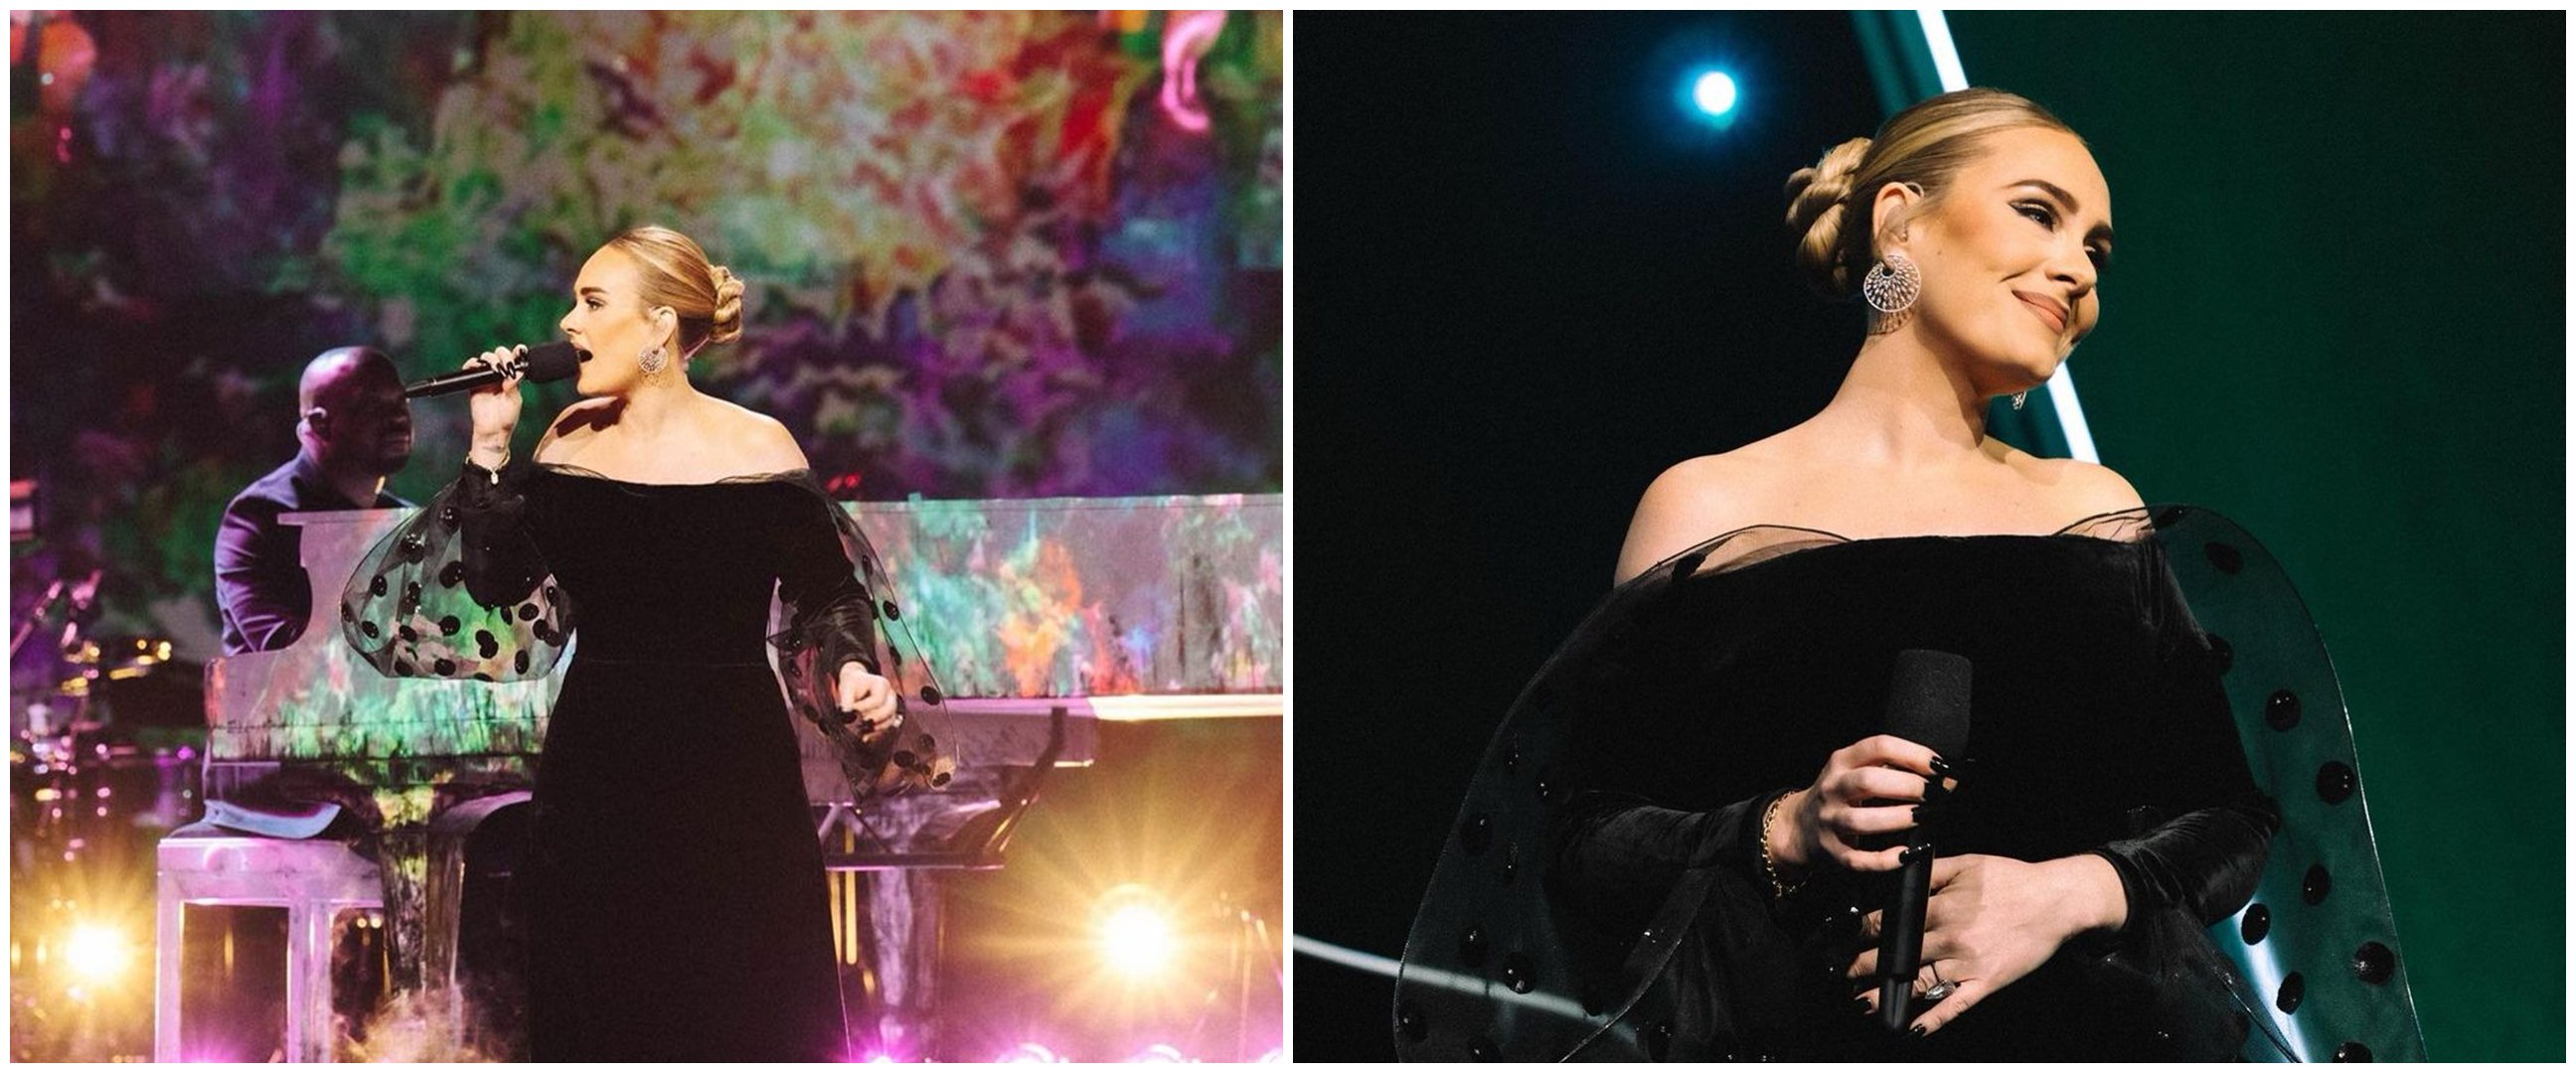 Momen Adele dibuat menangis oleh penggemar dari Indonesia saat konser di Las Vegas 